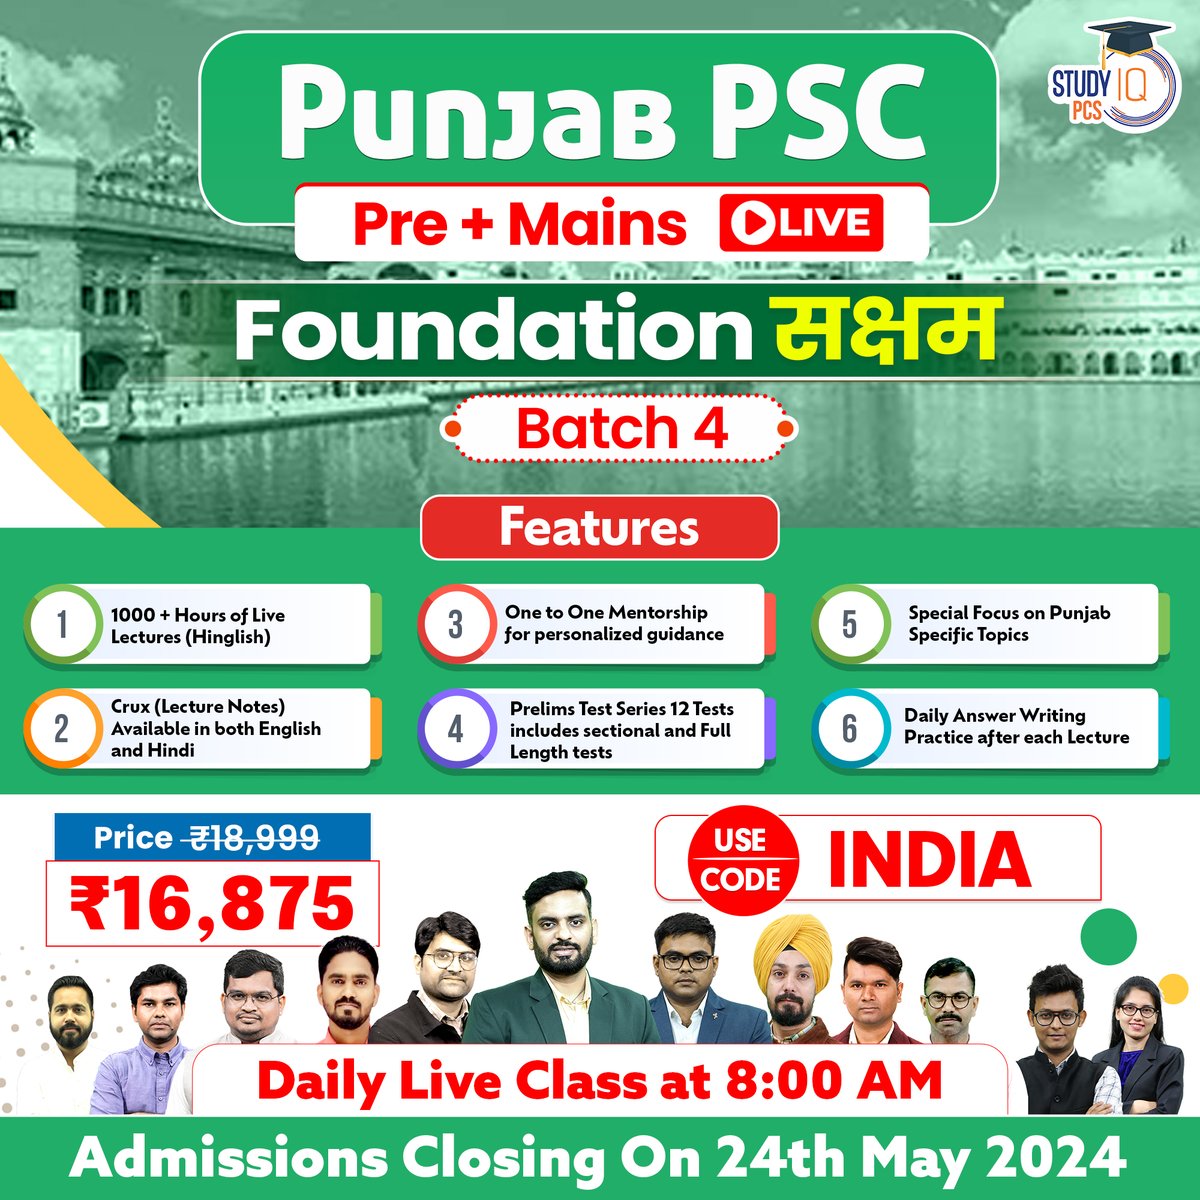 👉 Uttar Pradesh PSC (Pre + Mains) Live Foundation Saksham Batch 4 : bit.ly/4beGacF 👉 Bihar PSC (Pre + Mains) Live Foundation Saksham Batch 4: bit.ly/3ymeG6v 👉 Odisha PSC (Pre + Mains) Live Foundation Saksham Batch 4 : bit.ly/44DW8e7